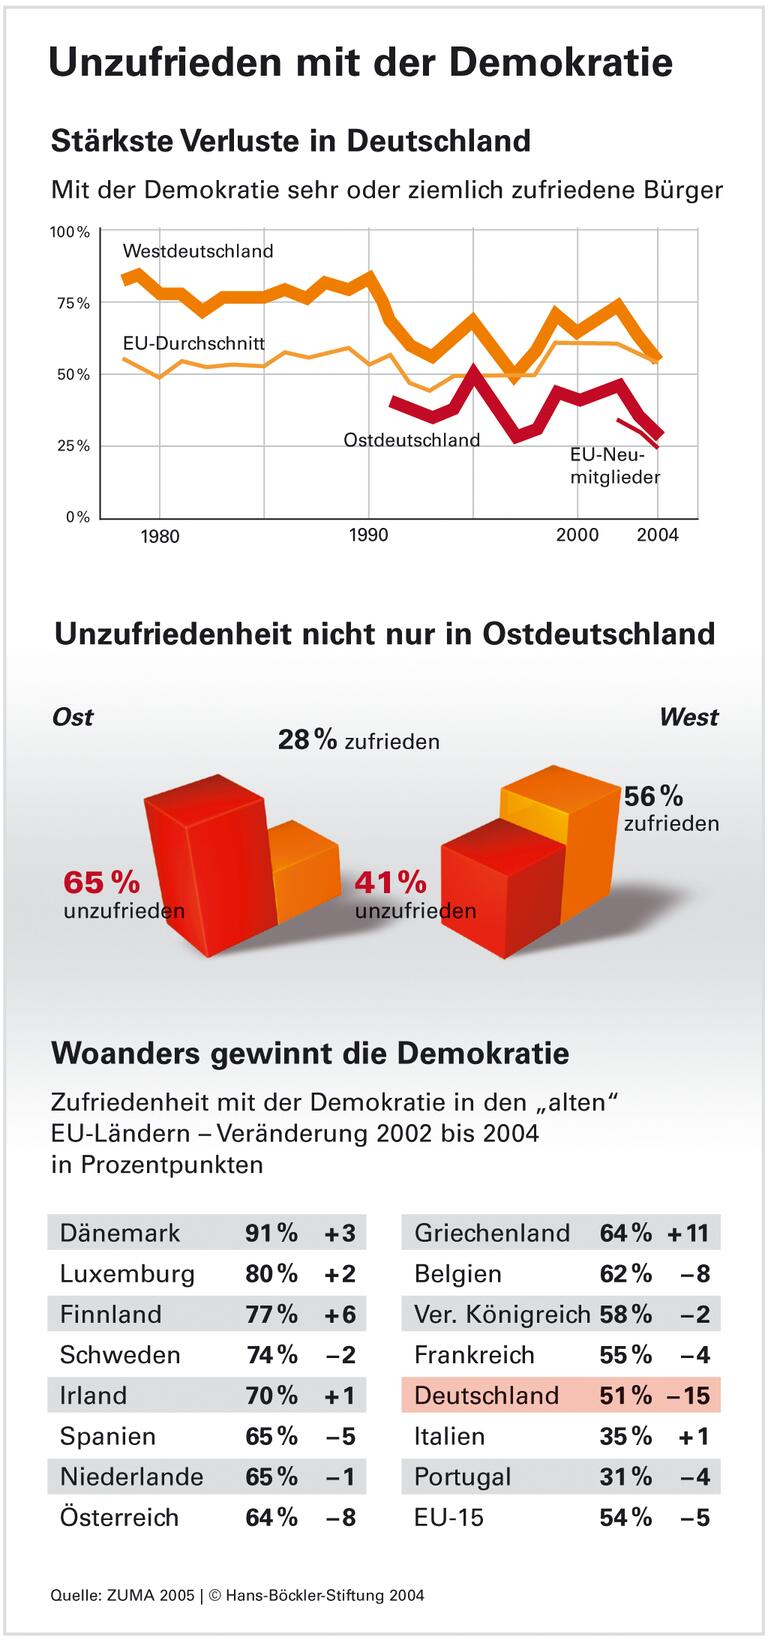 Demokratie: Vertrauen der Deutschen schwindet bedenklich